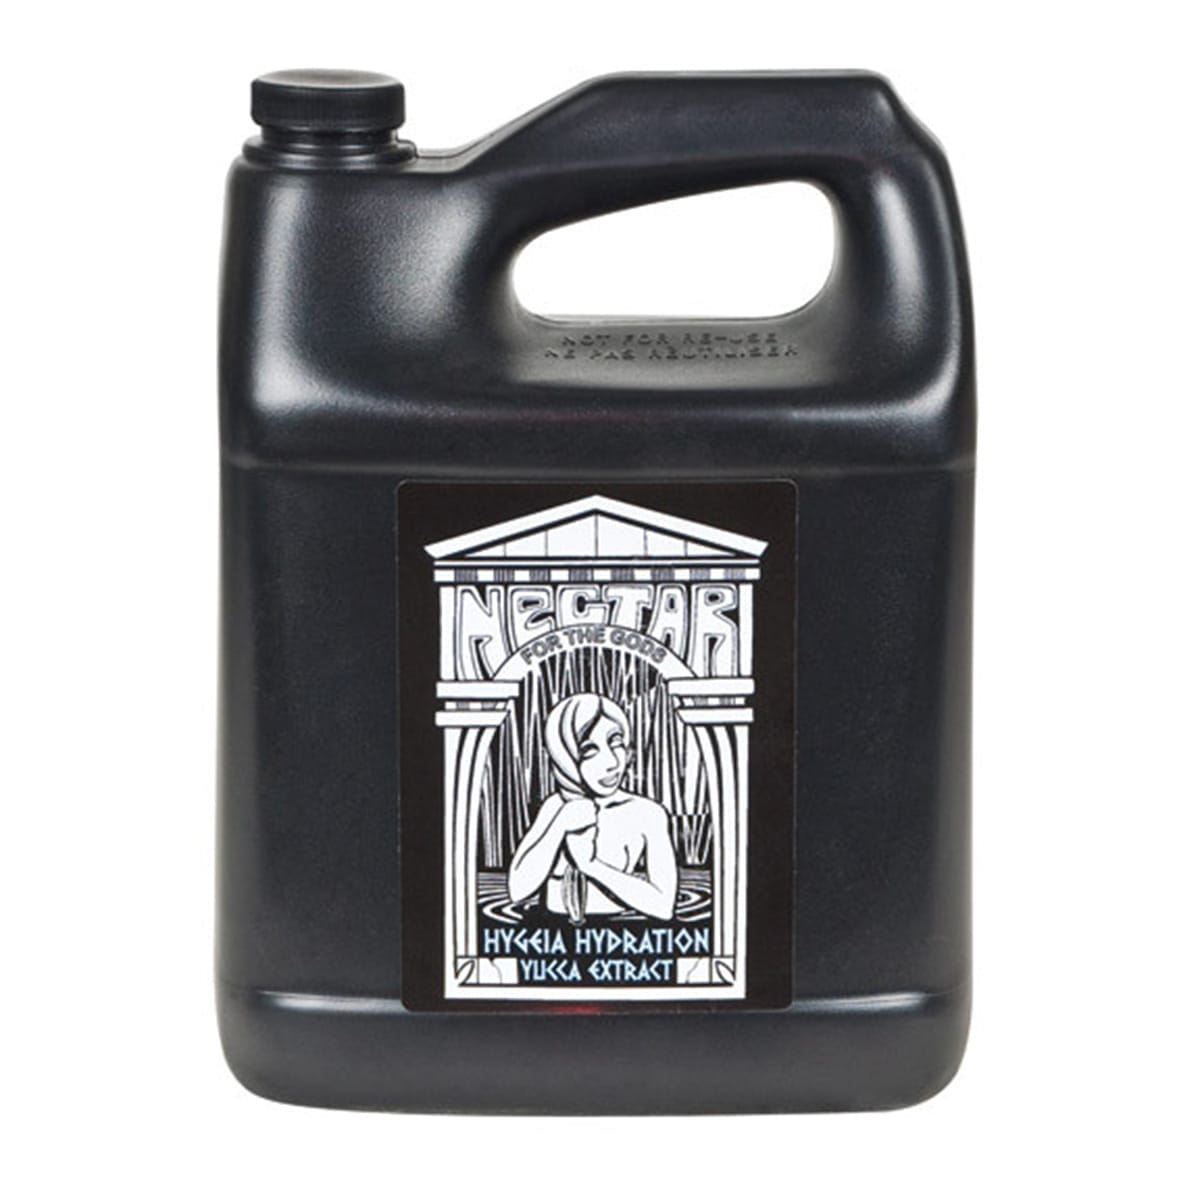 Nectar for the Gods Hygeia Hydration Gallon